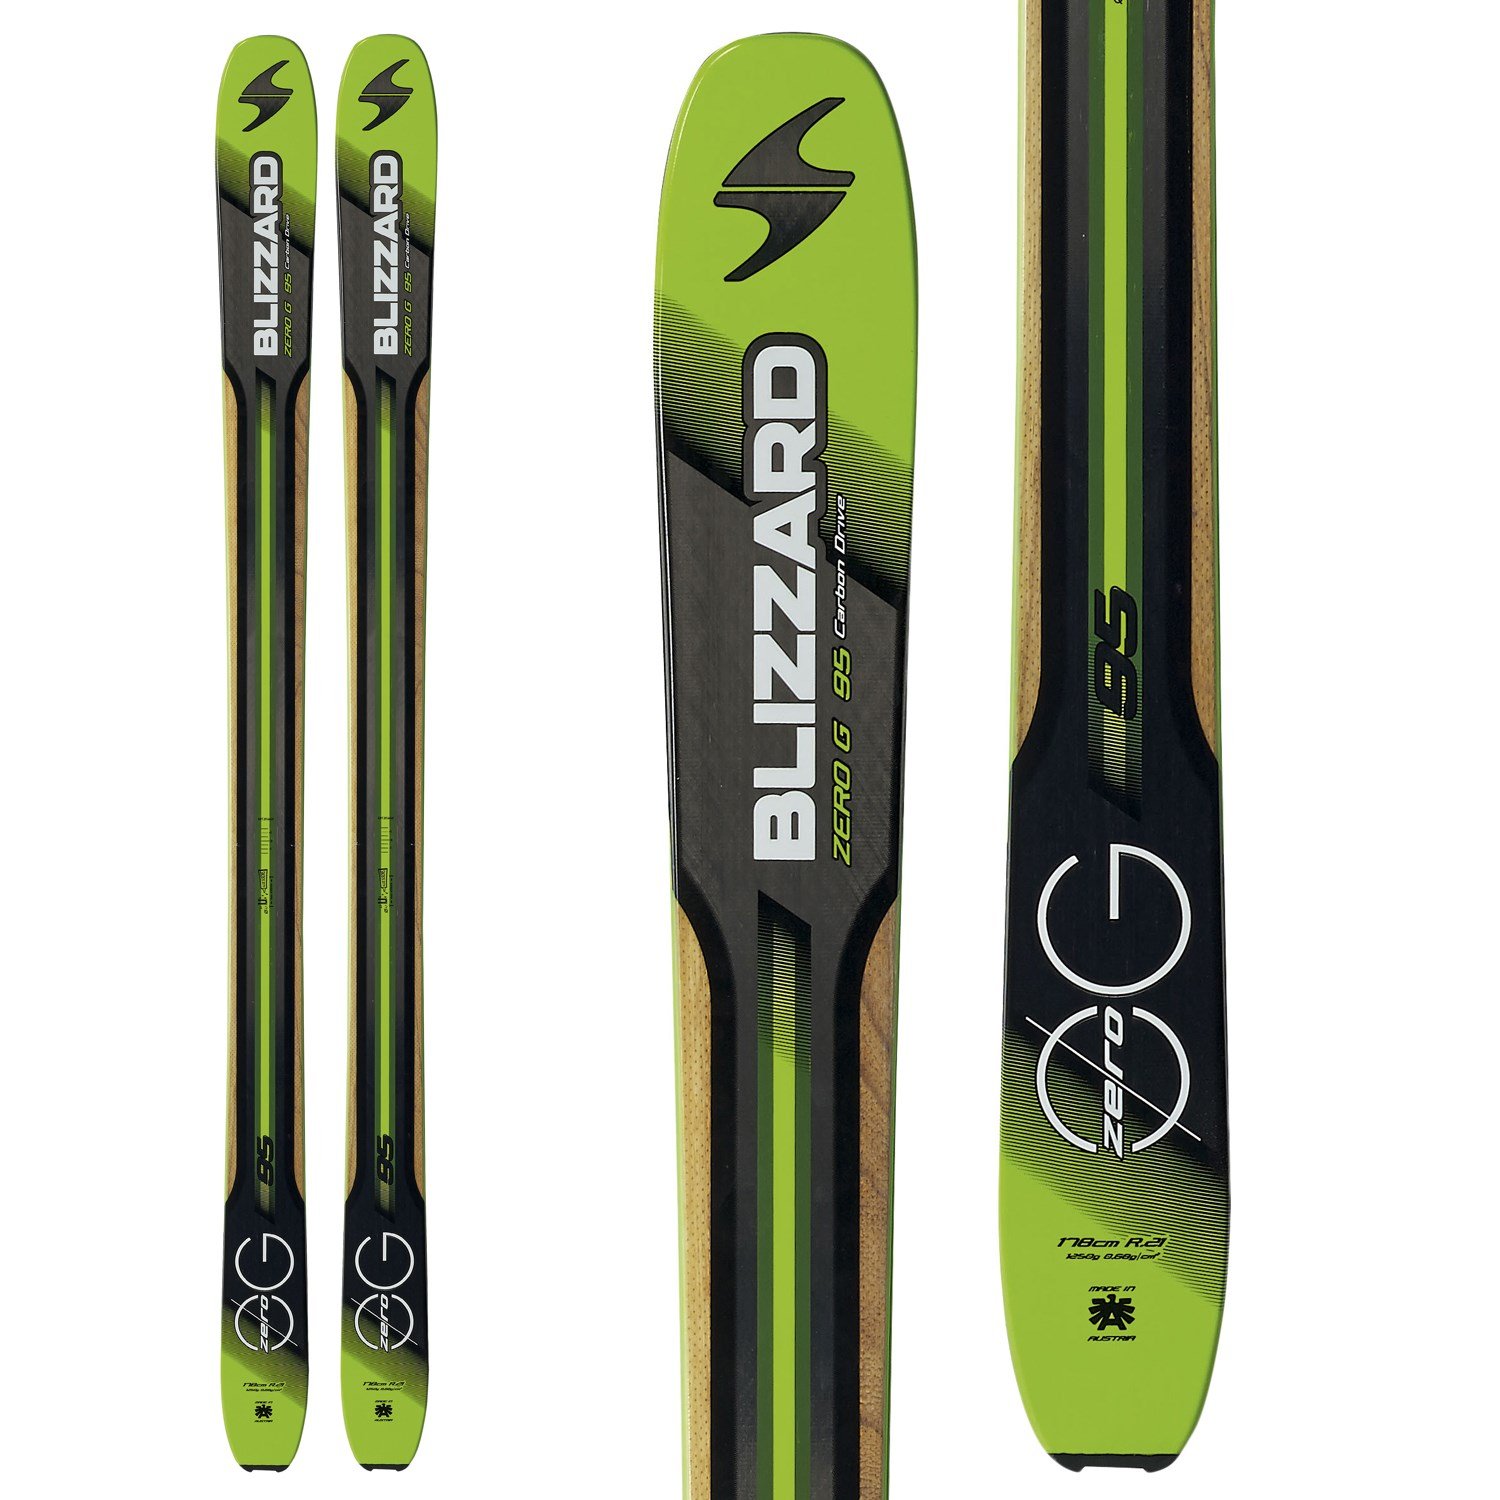 Blizzard Zero G 95 Skis 2016 | evo